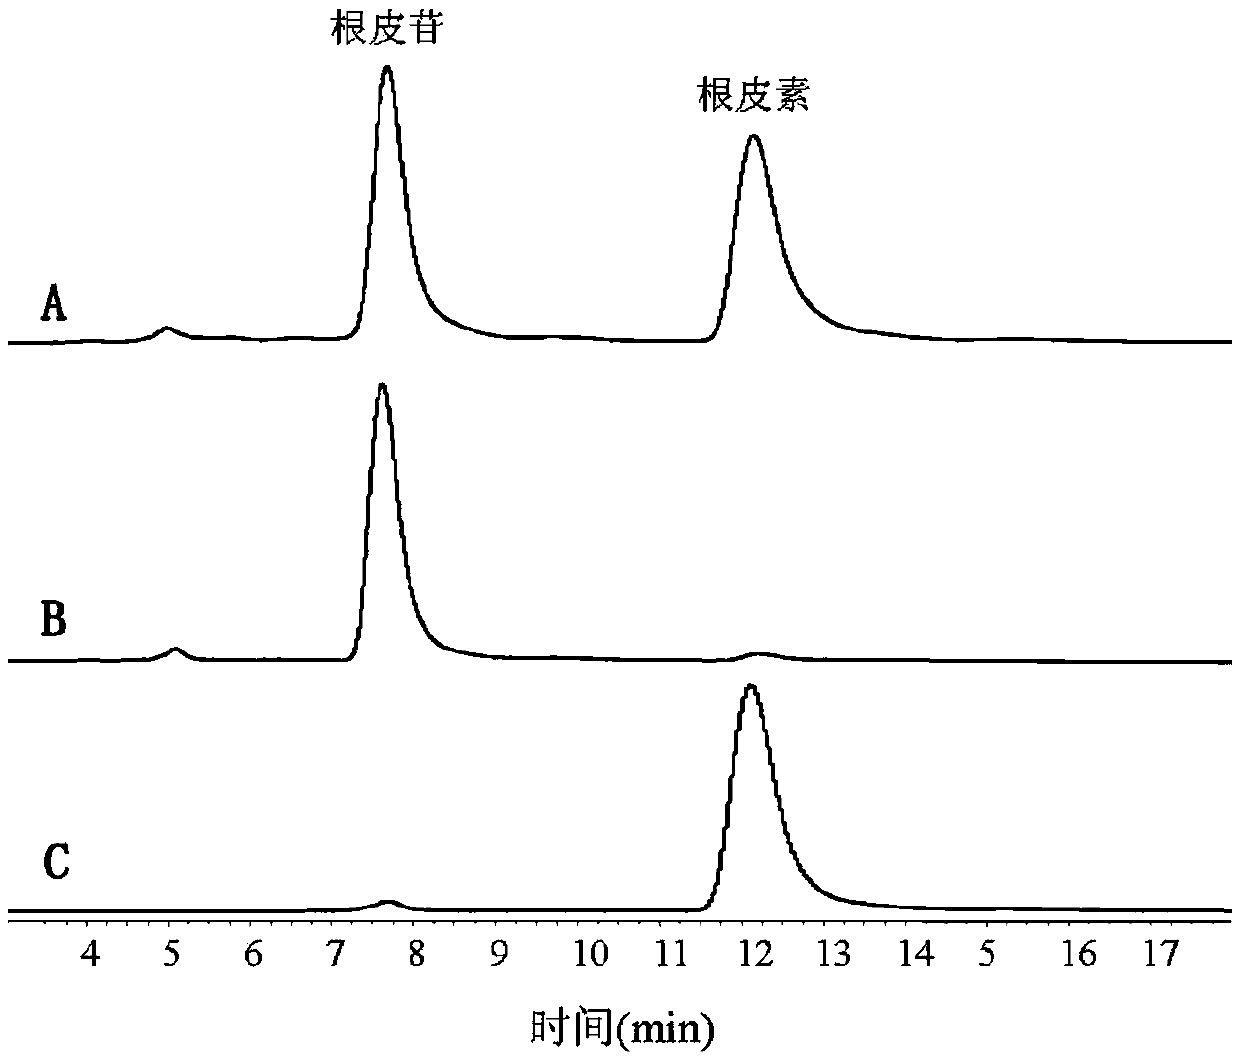 Penicillium purpurescens QL-9204 and application for preparing phloretin during phlorizin conversion